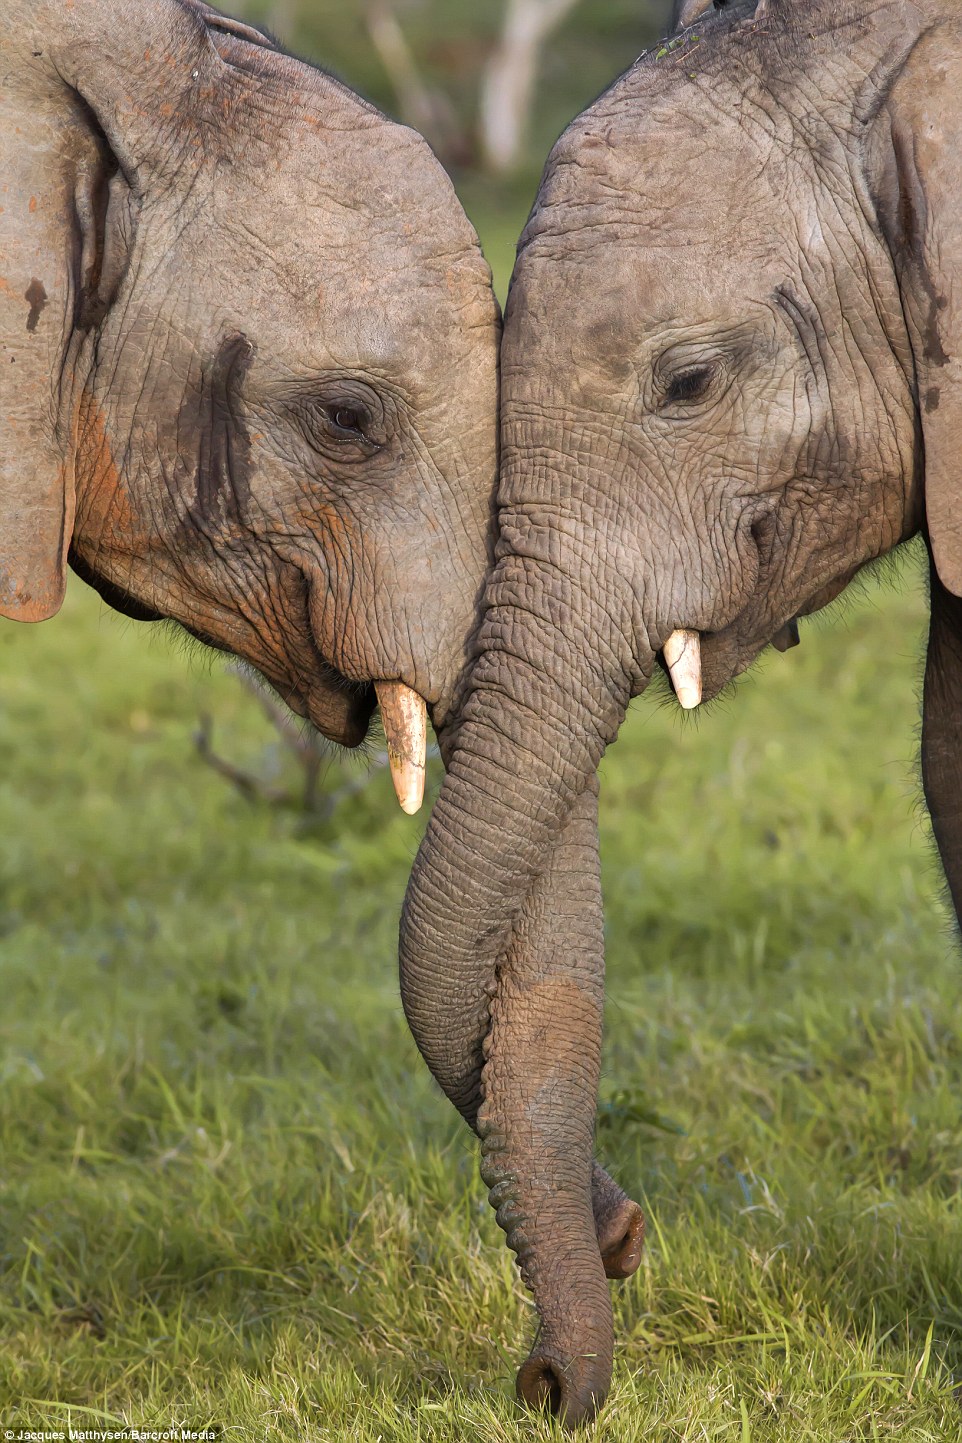 Nhiếp ảnh gia Jacques Matthysen cho biết hai chú voi đan vòi của chúng lại như cách con người nắm tay nhau, trông rất tình cảm